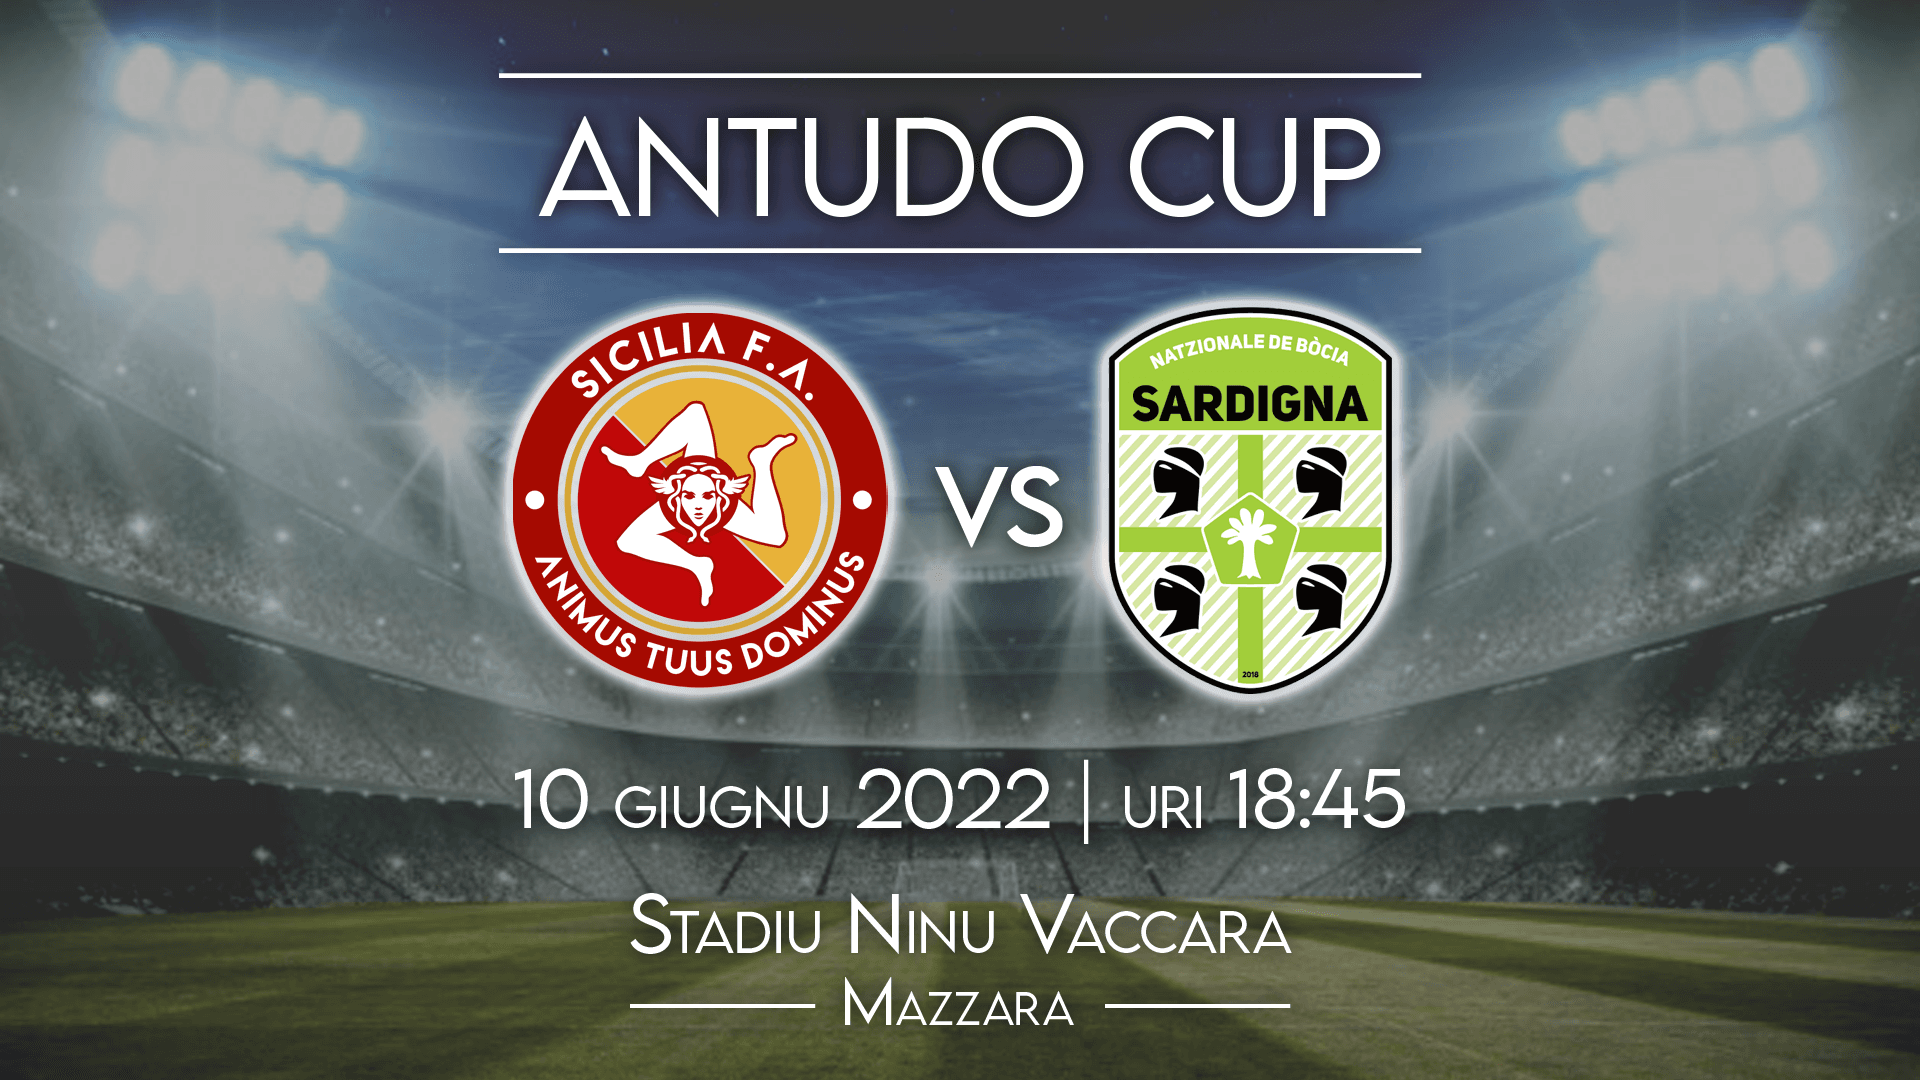 Antudo Cup: il 10 giugno a Mazara sfida fra la Nazionale Siciliana e quella Sarda